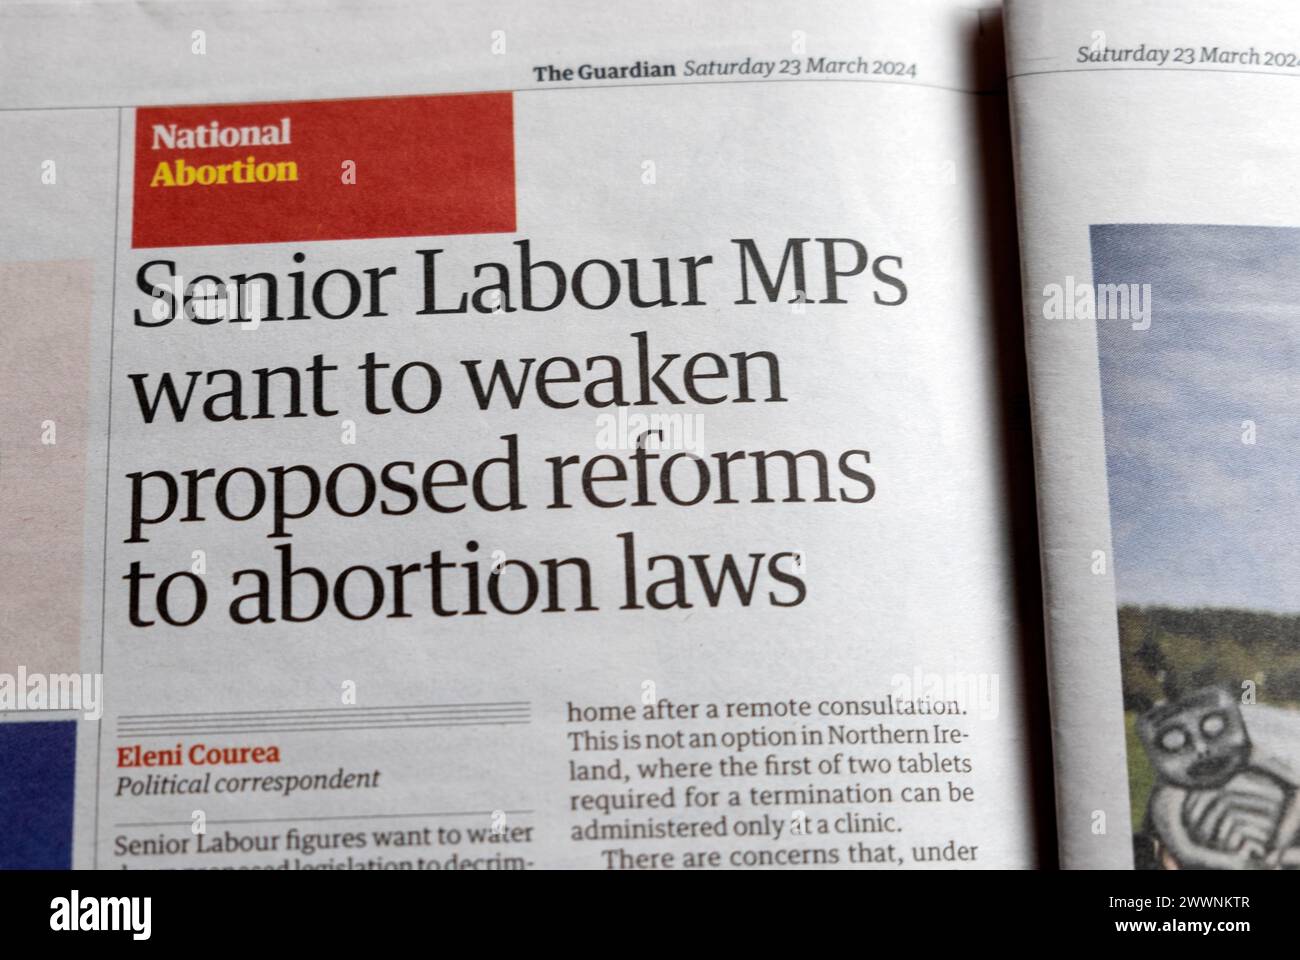 "Senior Labour-Abgeordnete wollen vorgeschlagene Reformen der Abtreibungsgesetze schwächen" Guardian-Zeitung Headline Abtreibungsgesetz artikel 23 März 2014 London England Vereinigtes Königreich Stockfoto